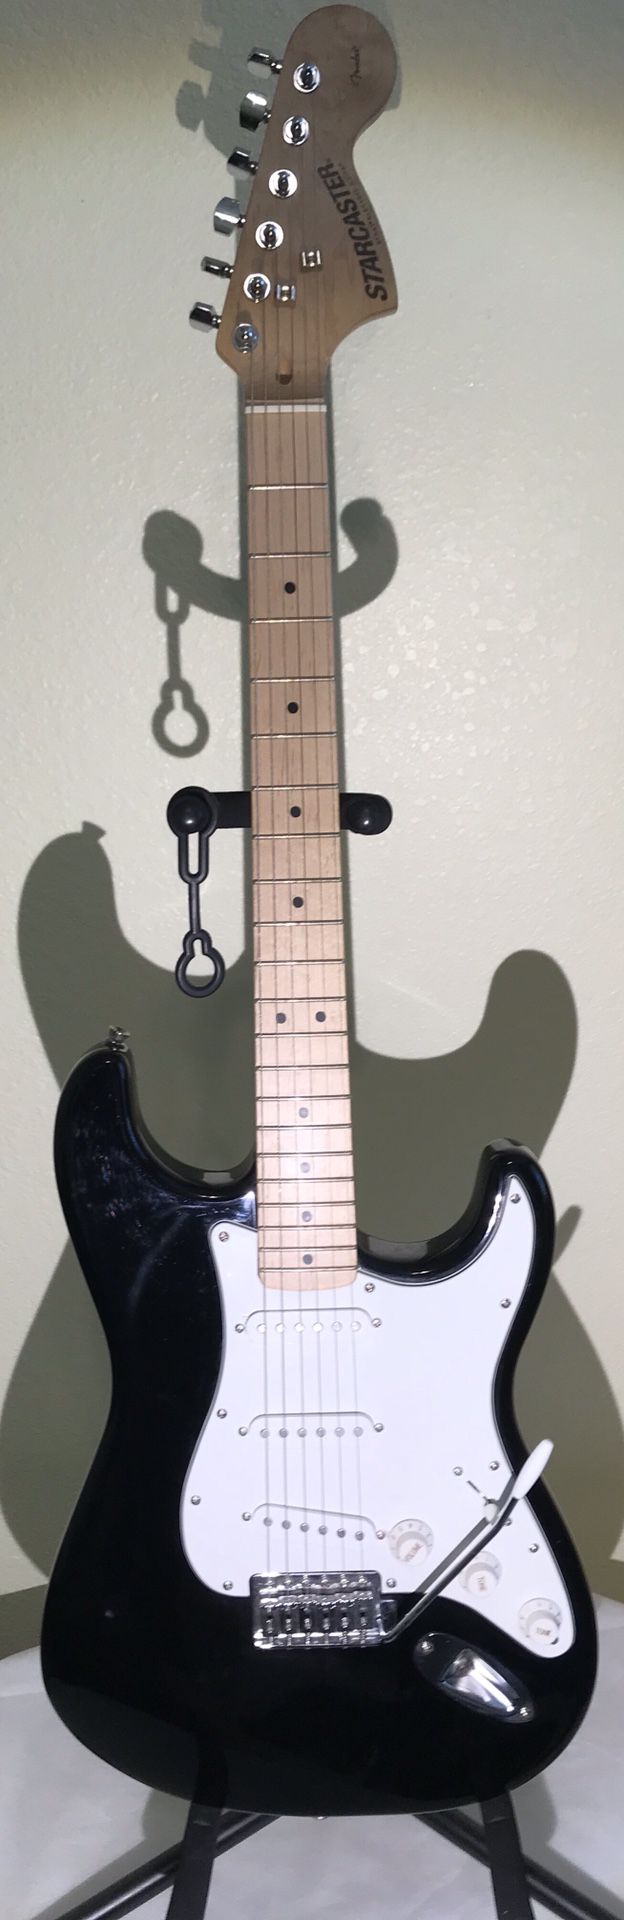 FENDER STARCASTER Strat Electric Guitar Black